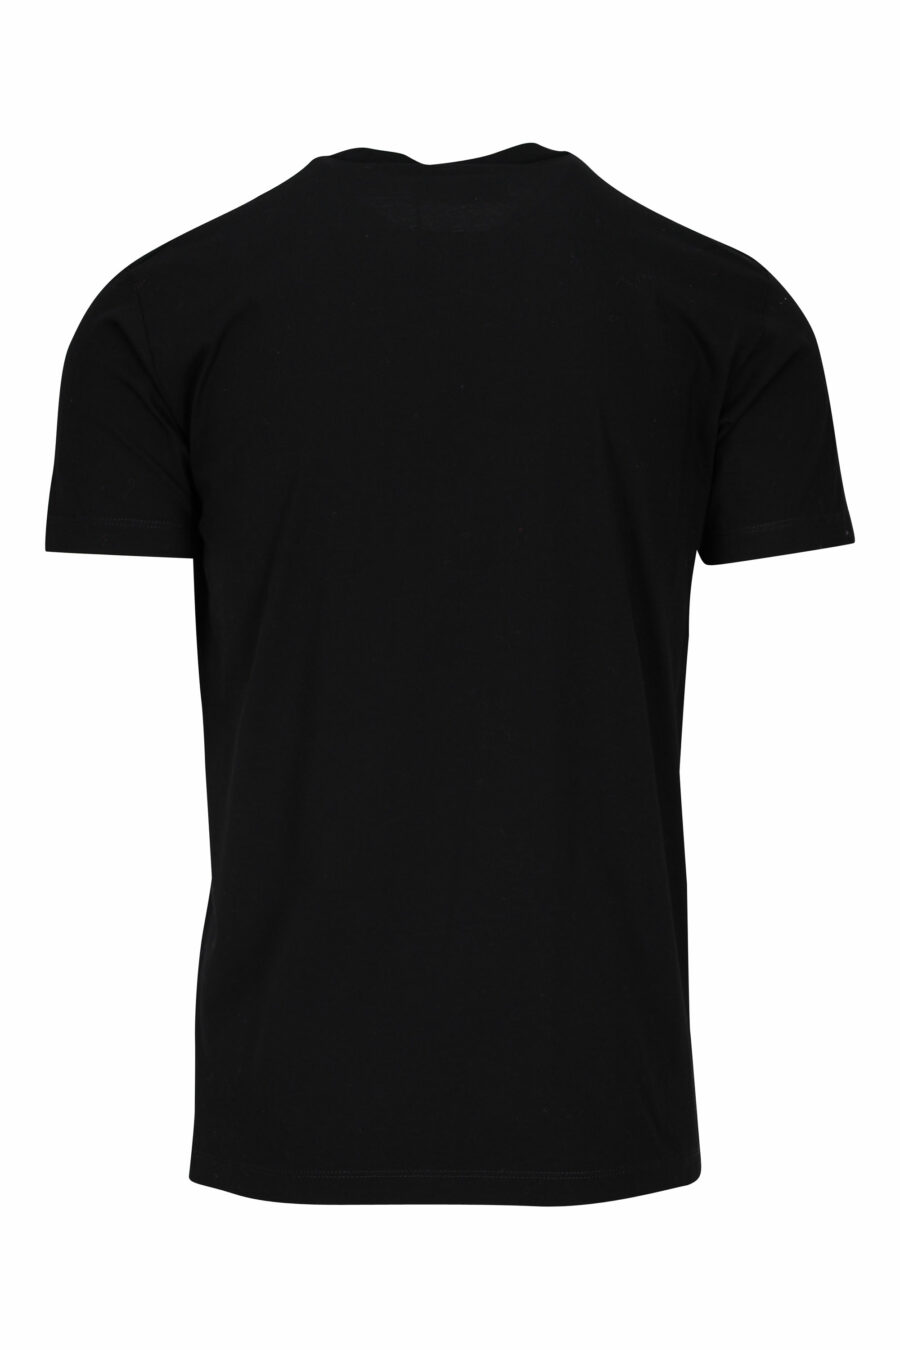 T-shirt noir avec logo argenté et imprimé porte-monnaie - 8052134940457 1